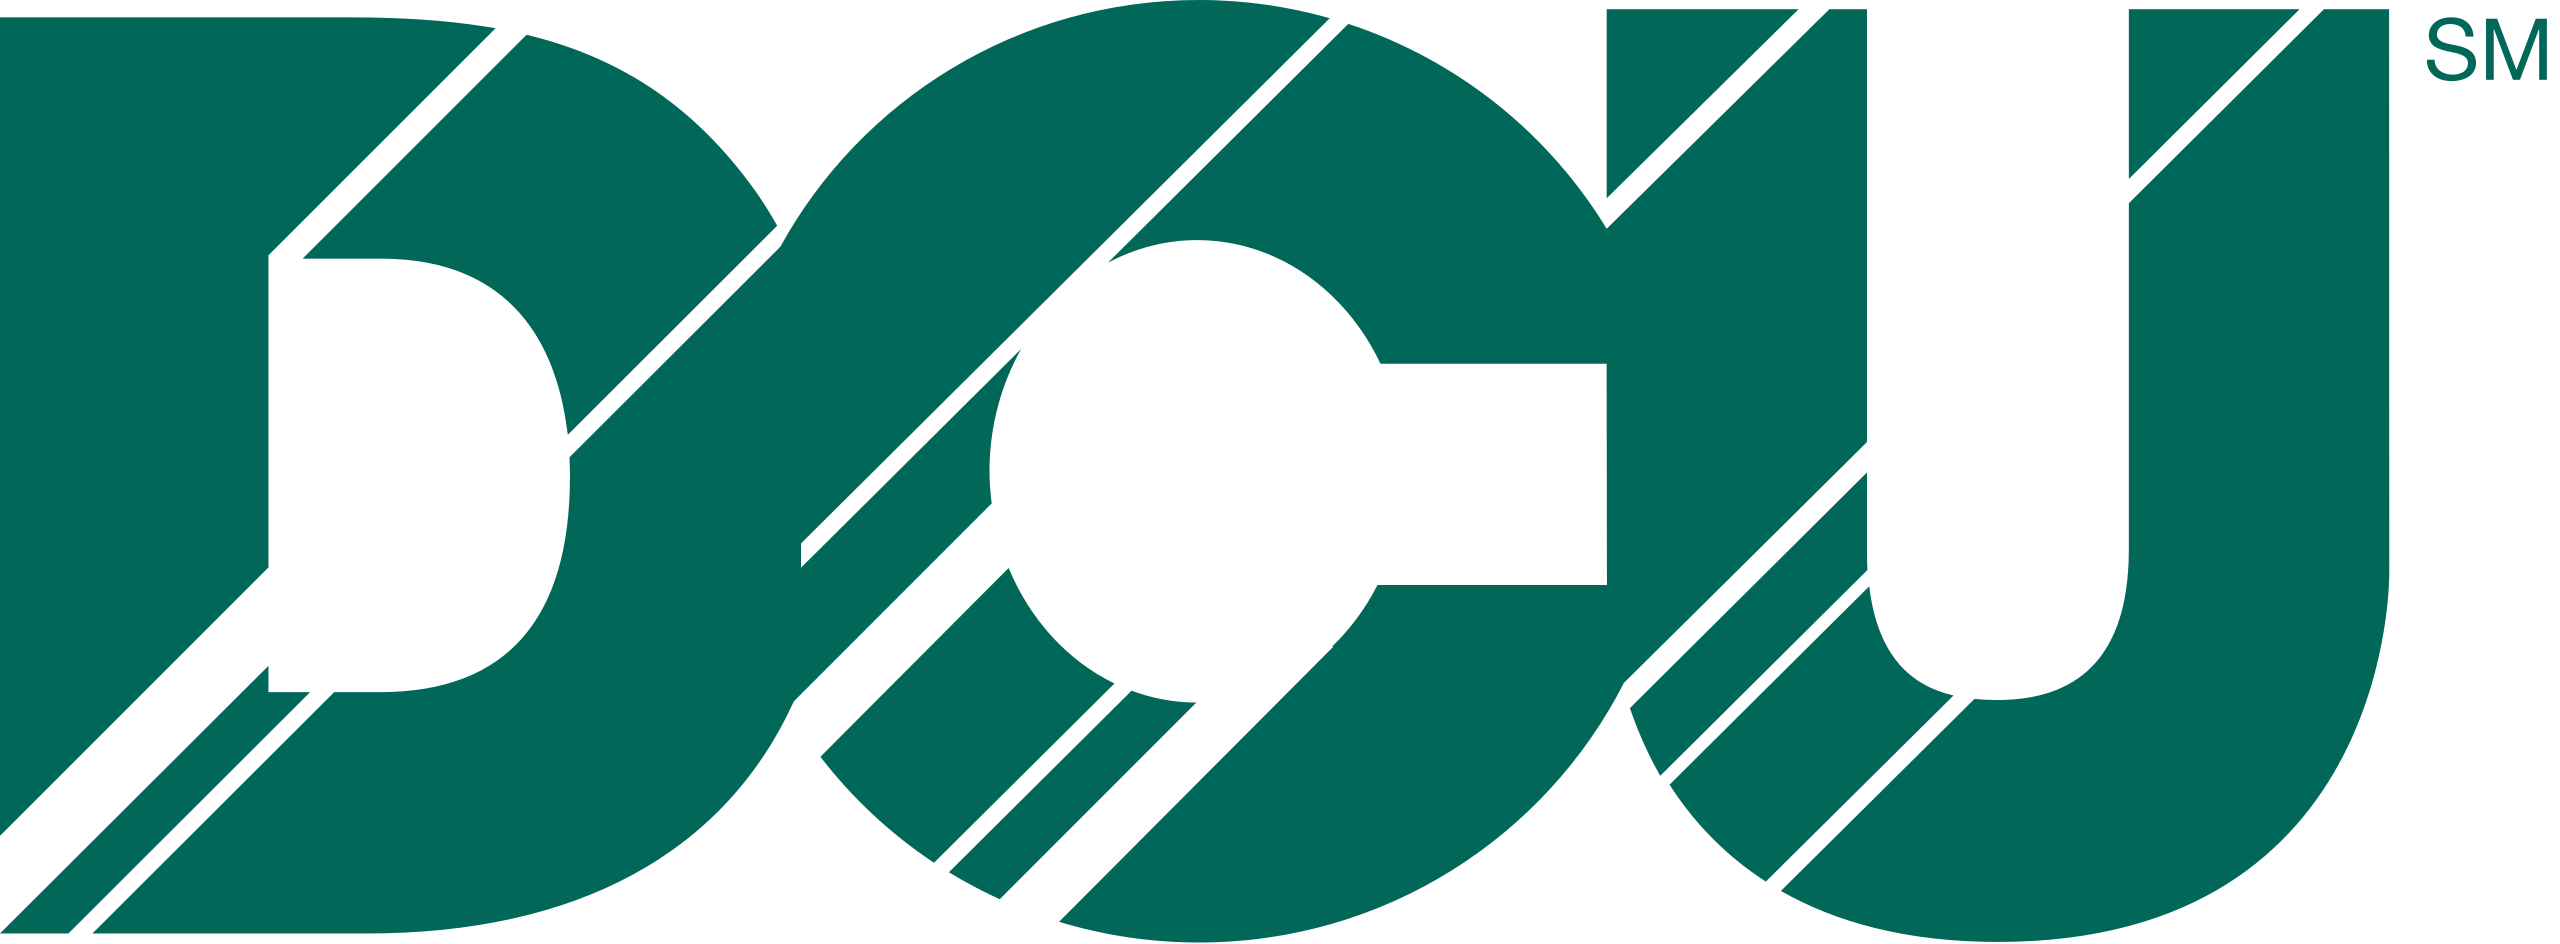 DCU-Green-Logo-768x284.png